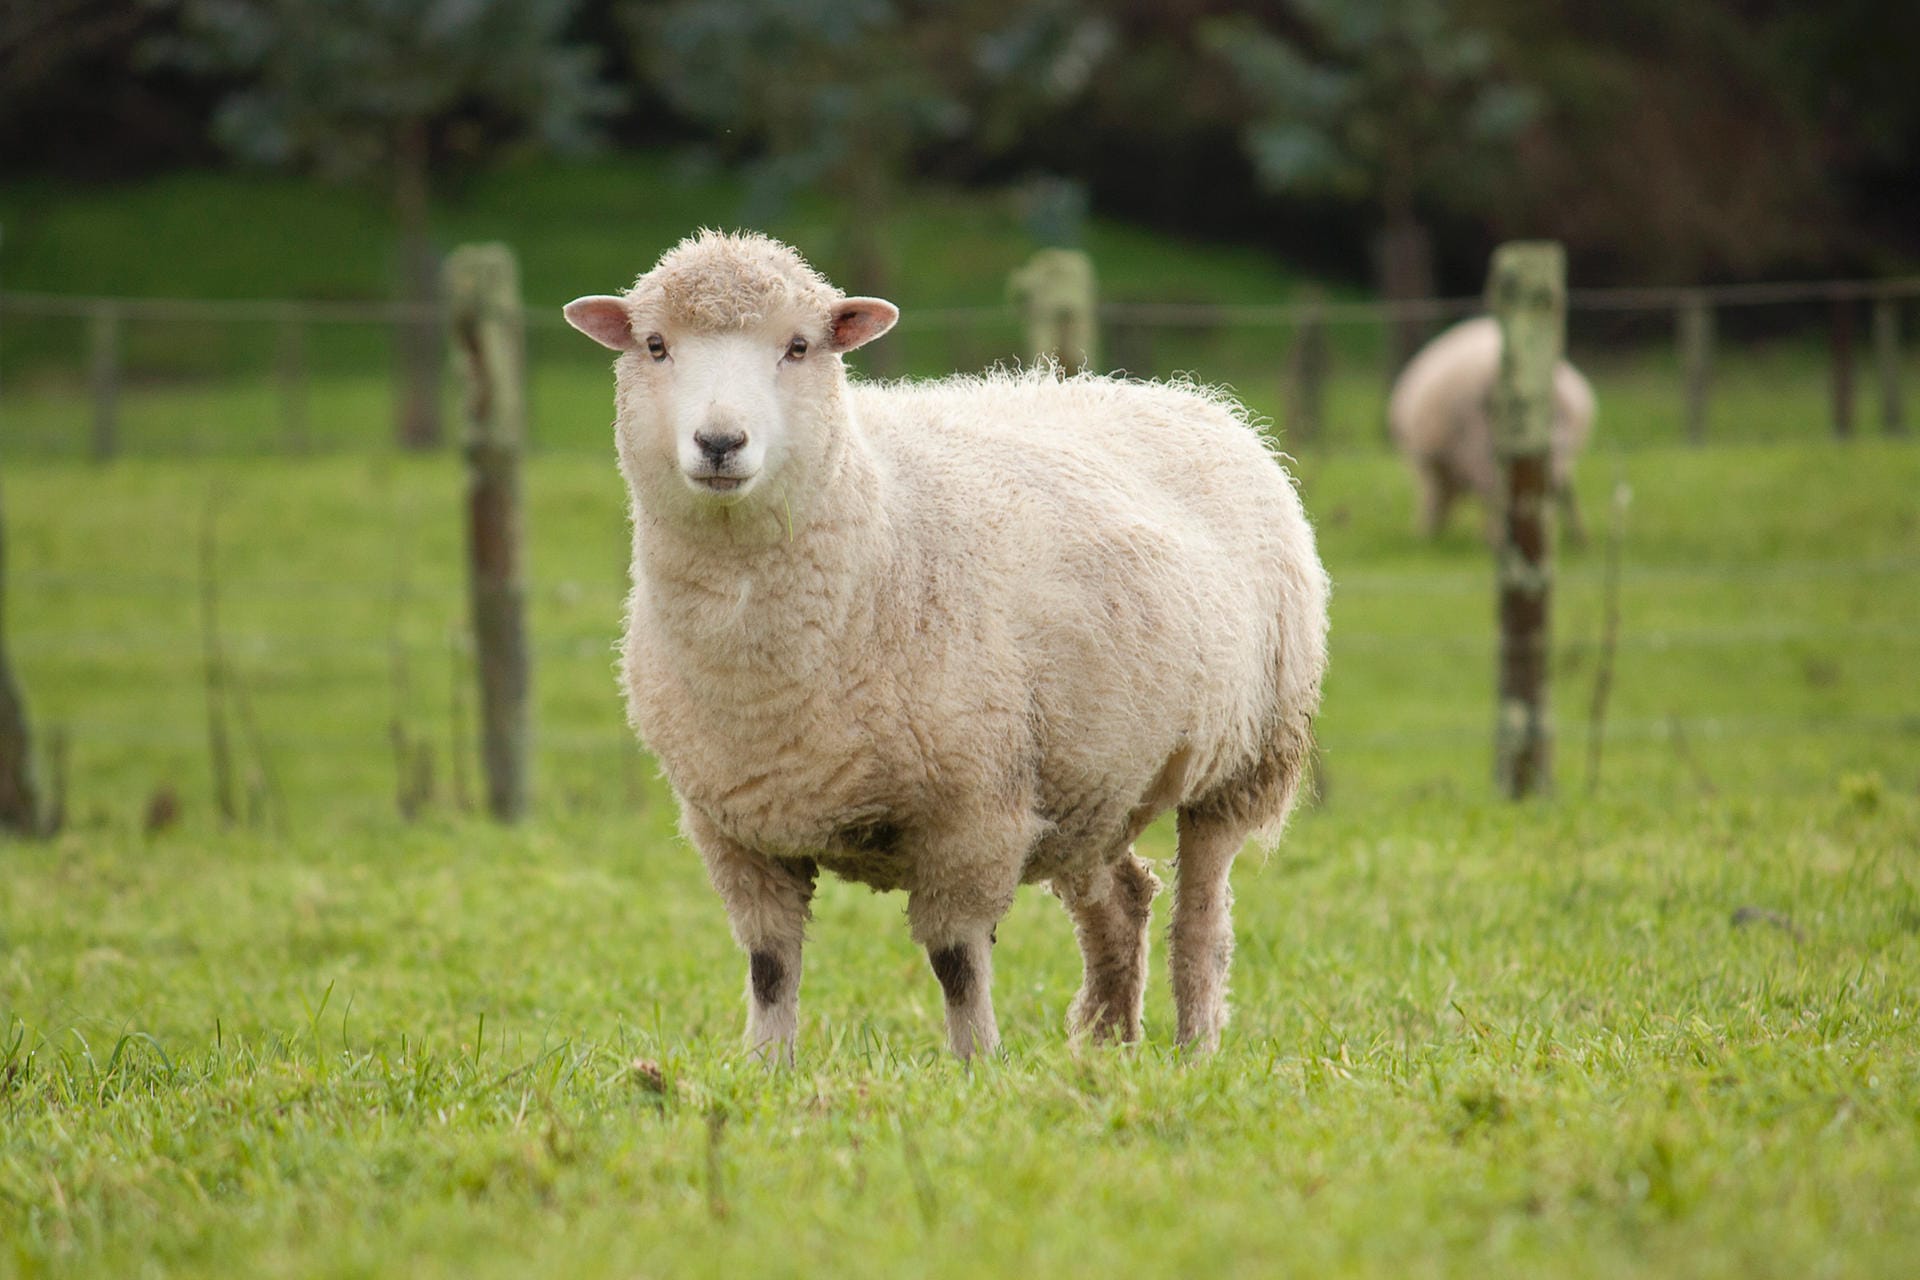 Lanolin ist eine andere Bezeichnung für Wollwachs. Dabei handelt es sich um das Sekret aus den Talgdrüsen von Schafen. Es wird aufgrund seiner hautpflegenden Eigenschaften in Salben und Cremes verwendet.